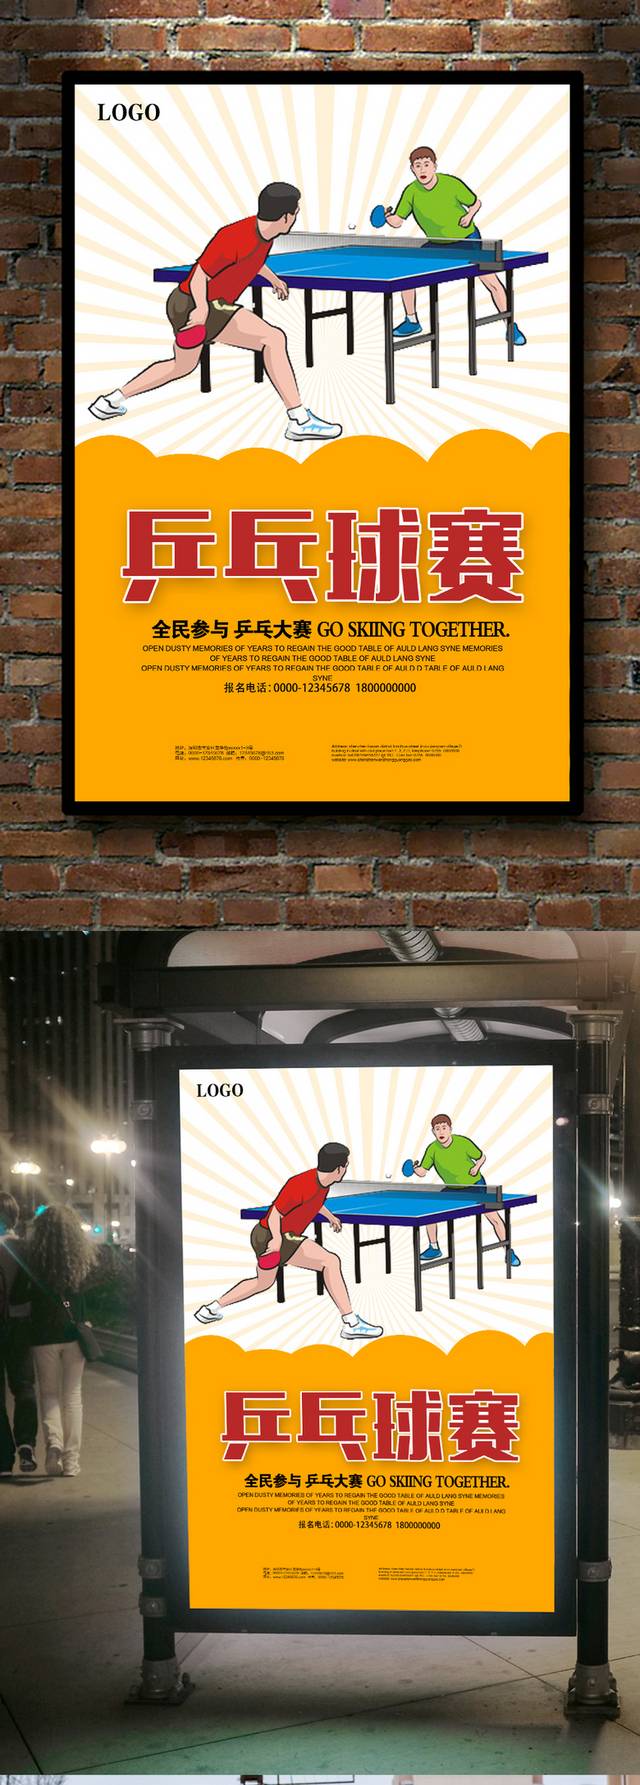 乒乓球比赛海报设计模板免费下载